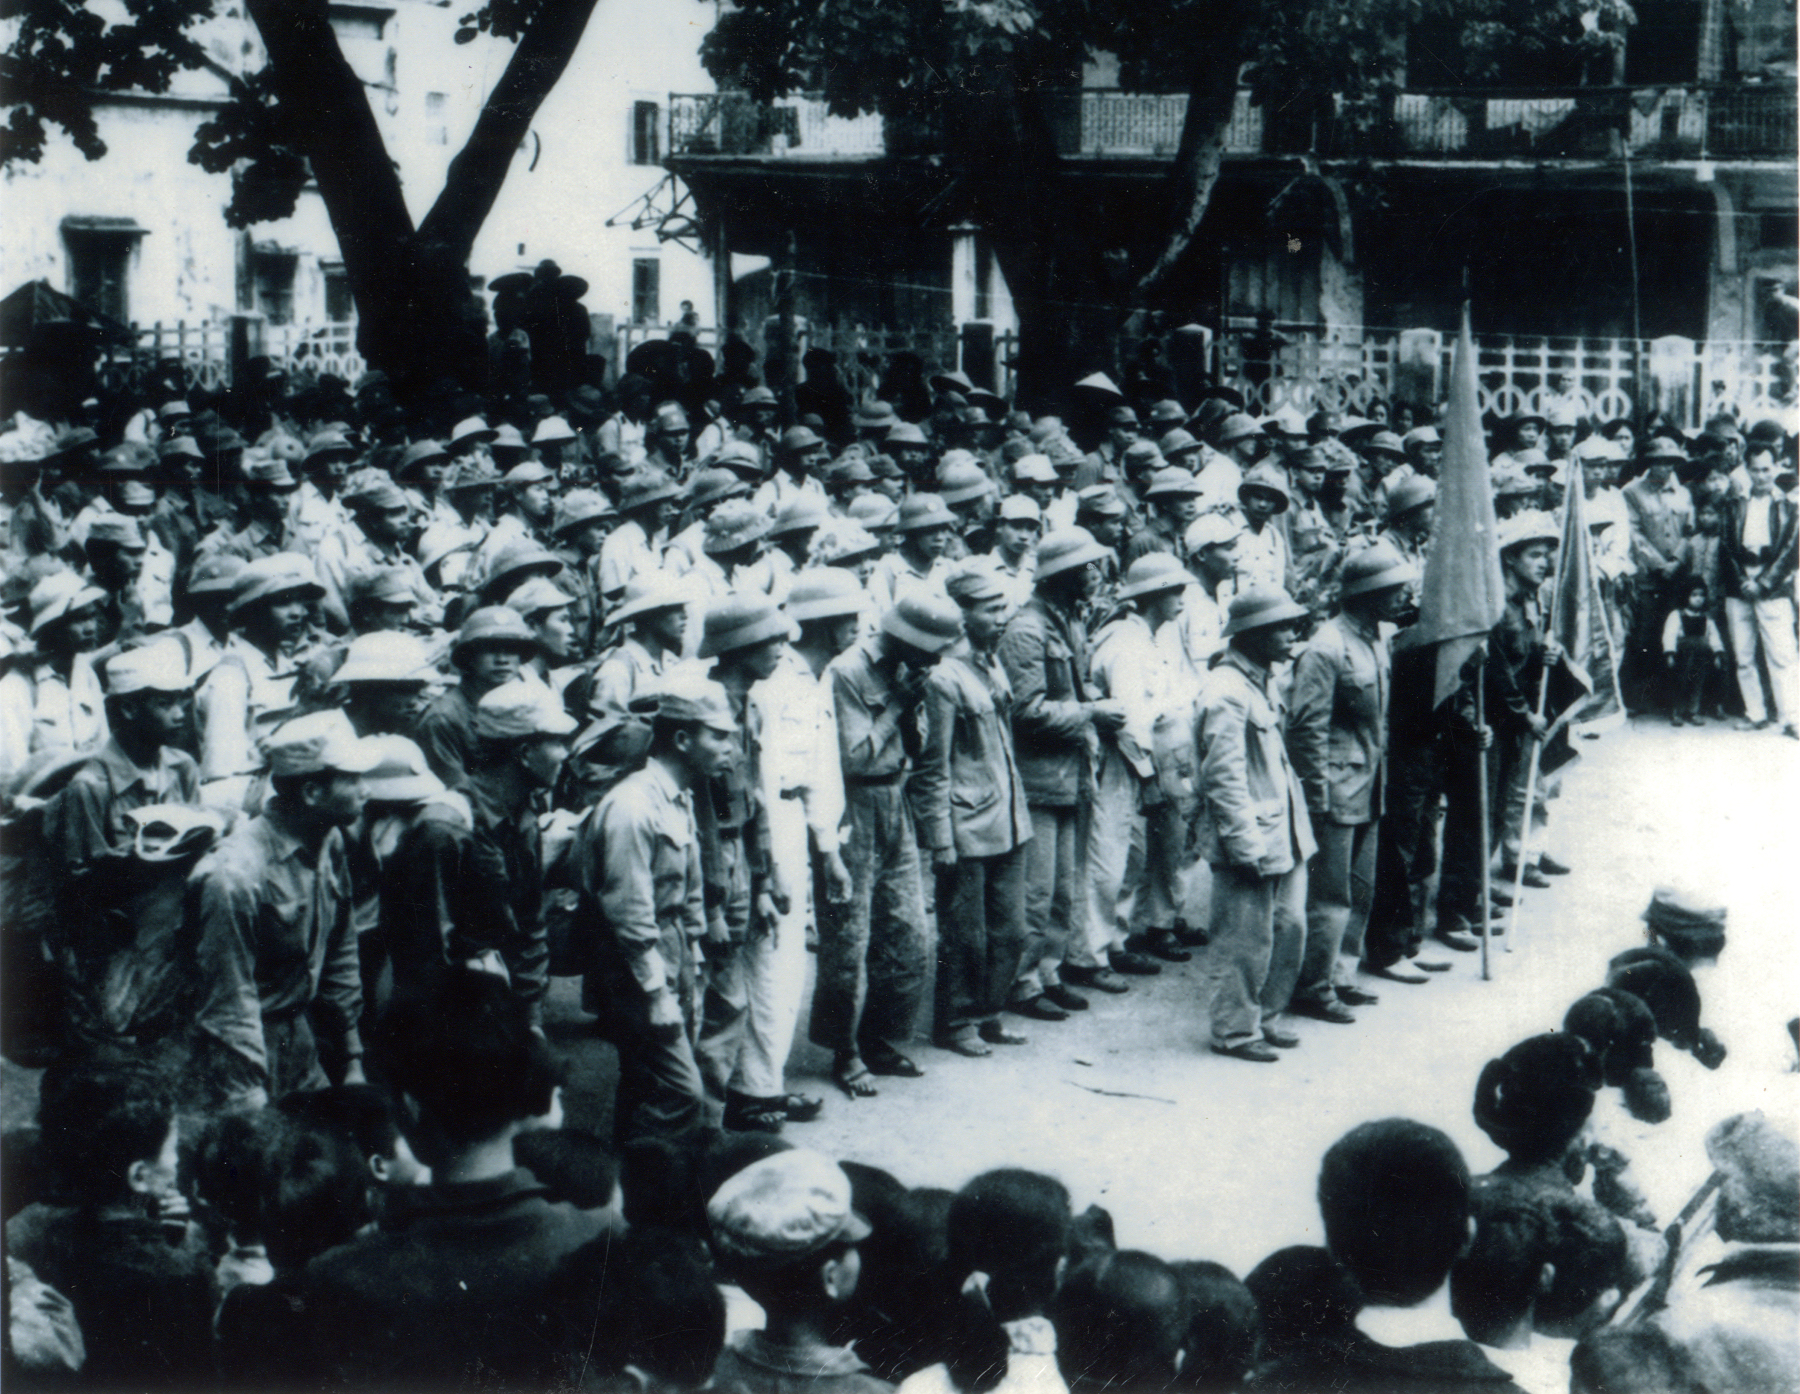 Quang cảnh lễ xuất quân của Binh đoàn Than tổ chức tại sân Cây Tháp (Hòn Gai) ngày 27/7/1967. Ảnh Quang Sơn